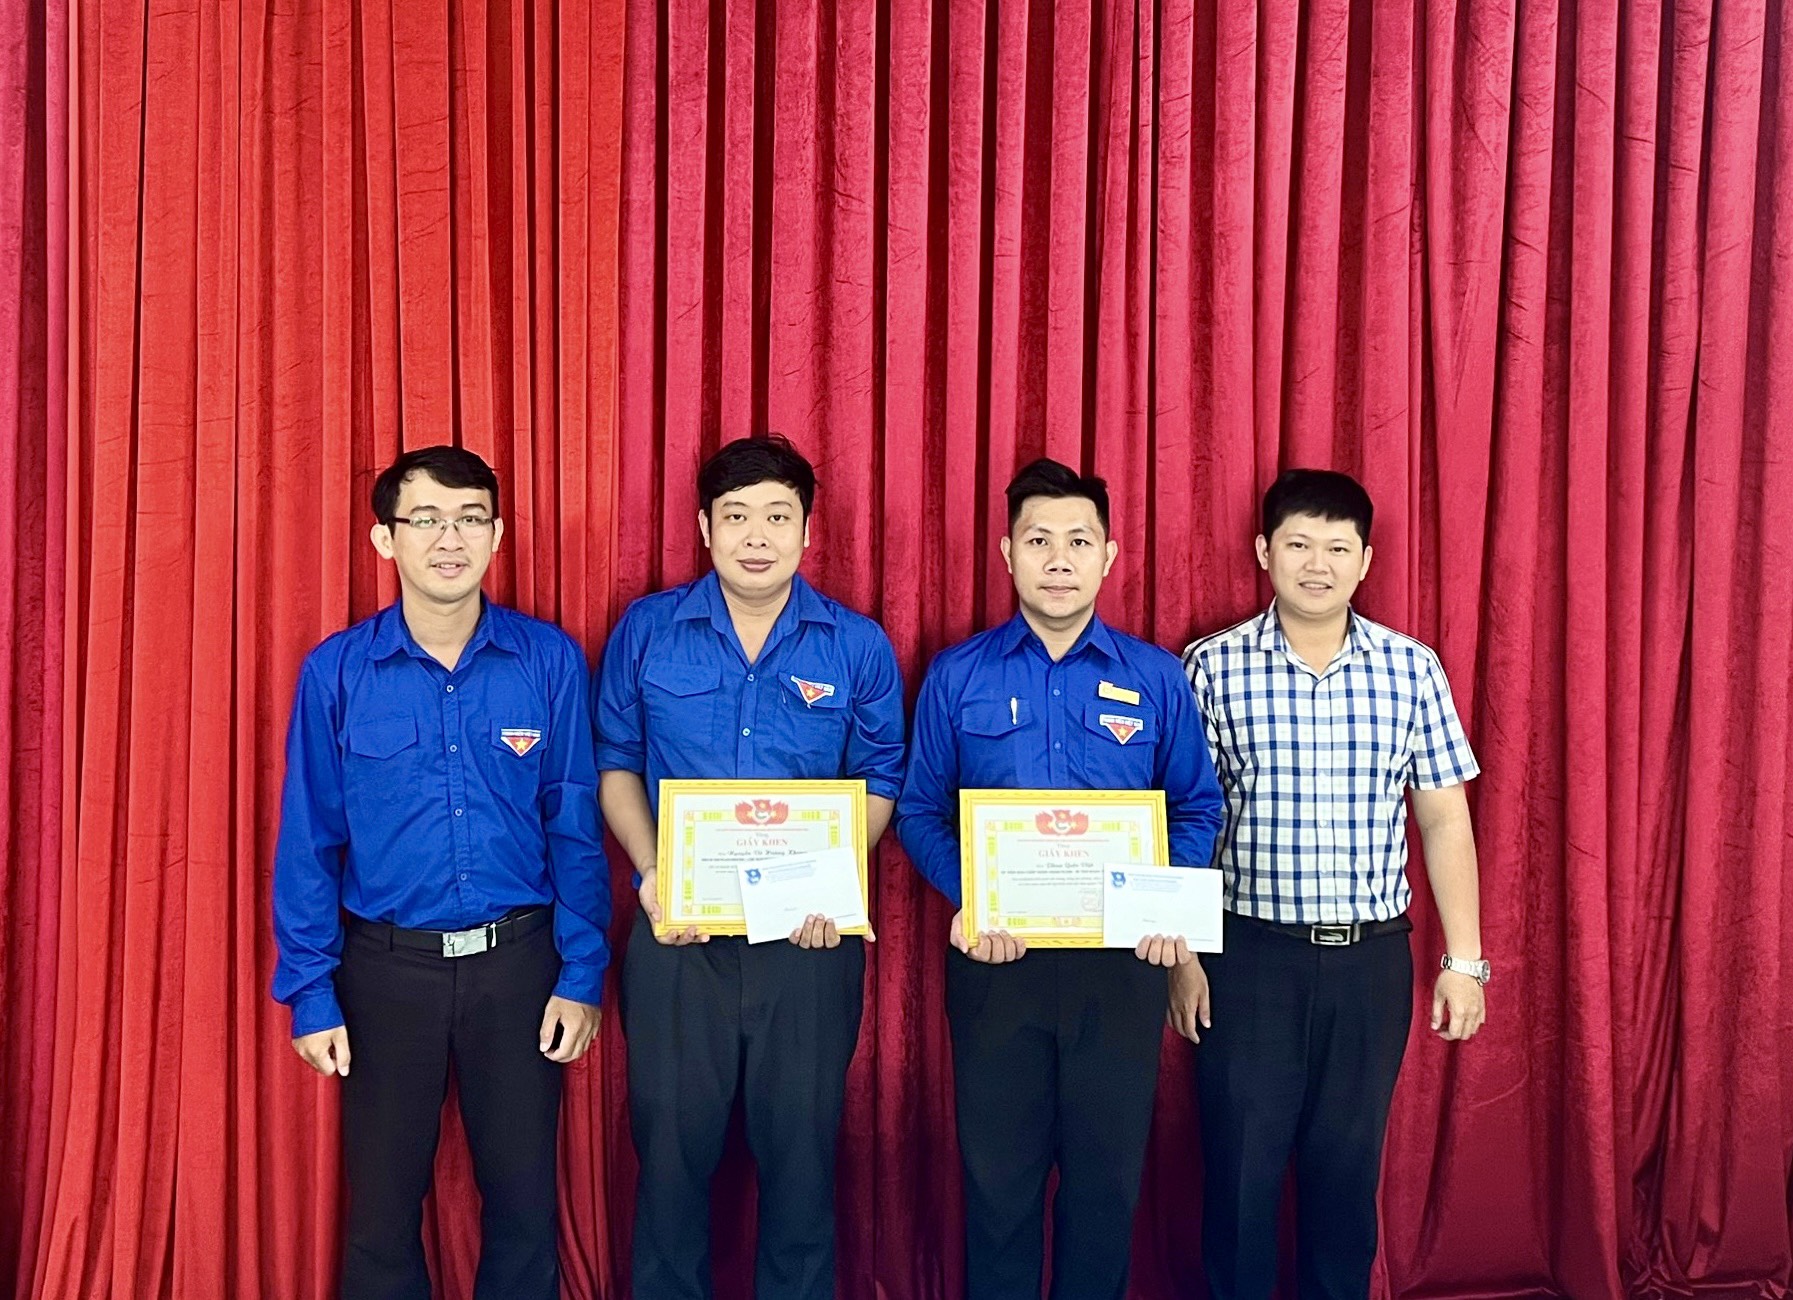 Đồng chí Lê Trung Hiếu (bìa trái) và đồng chí Ngô Thanh Tuấn (bìa phải) trao tặng giấy khen và biểu dương 02 đồng chí Khang và đồng chí Việt